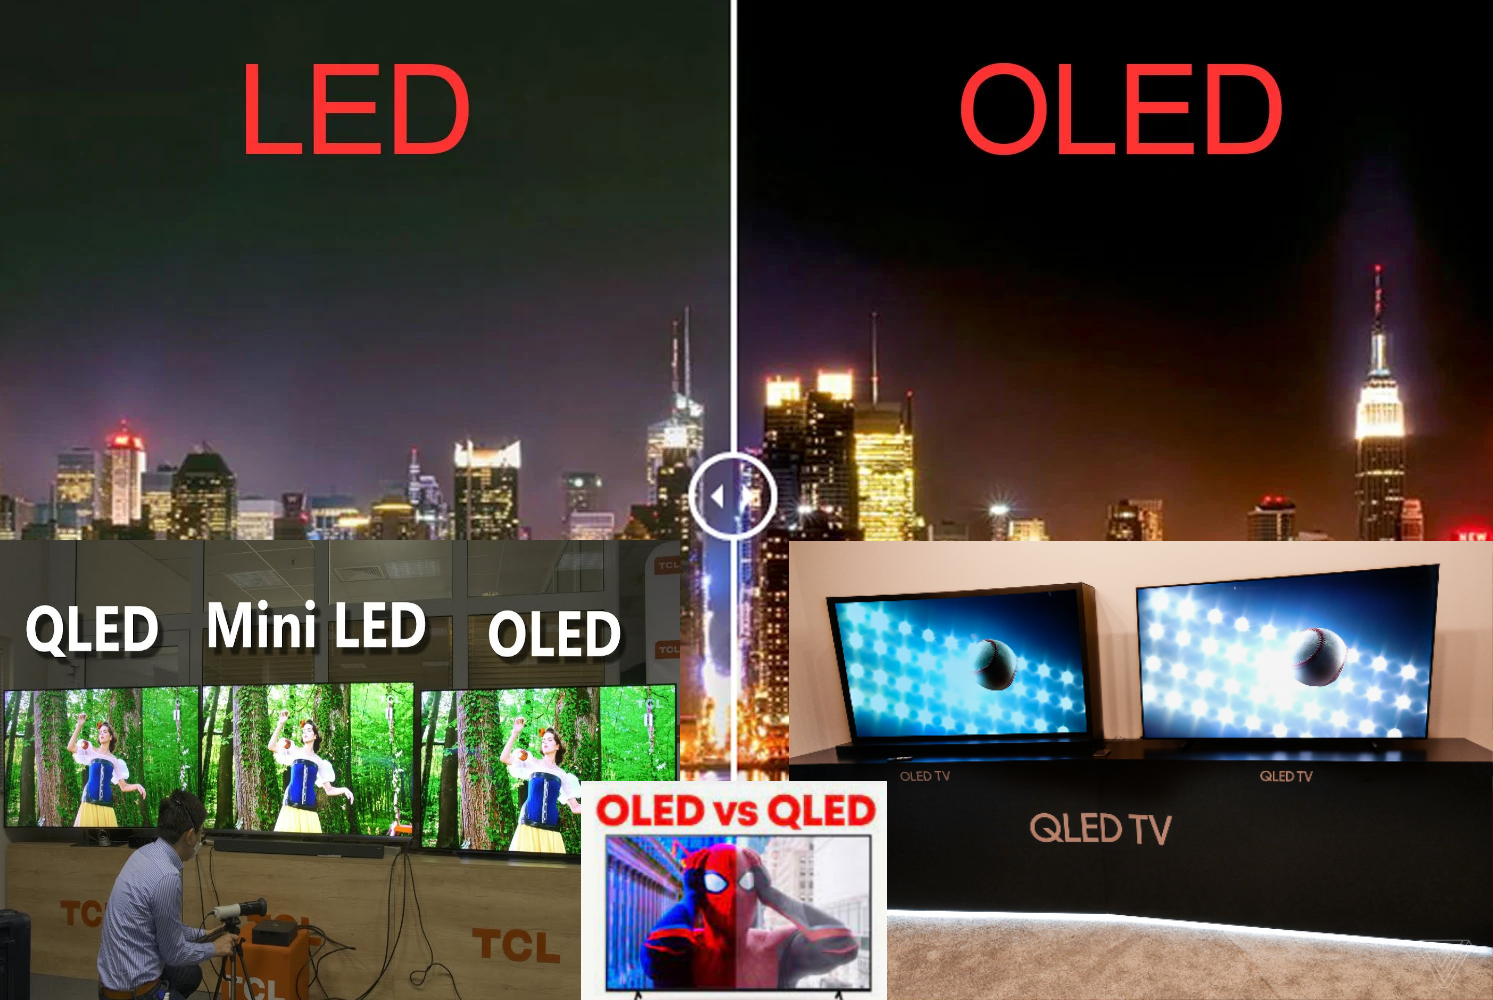 LED, Mini LED, QLED, OLED...What are these??